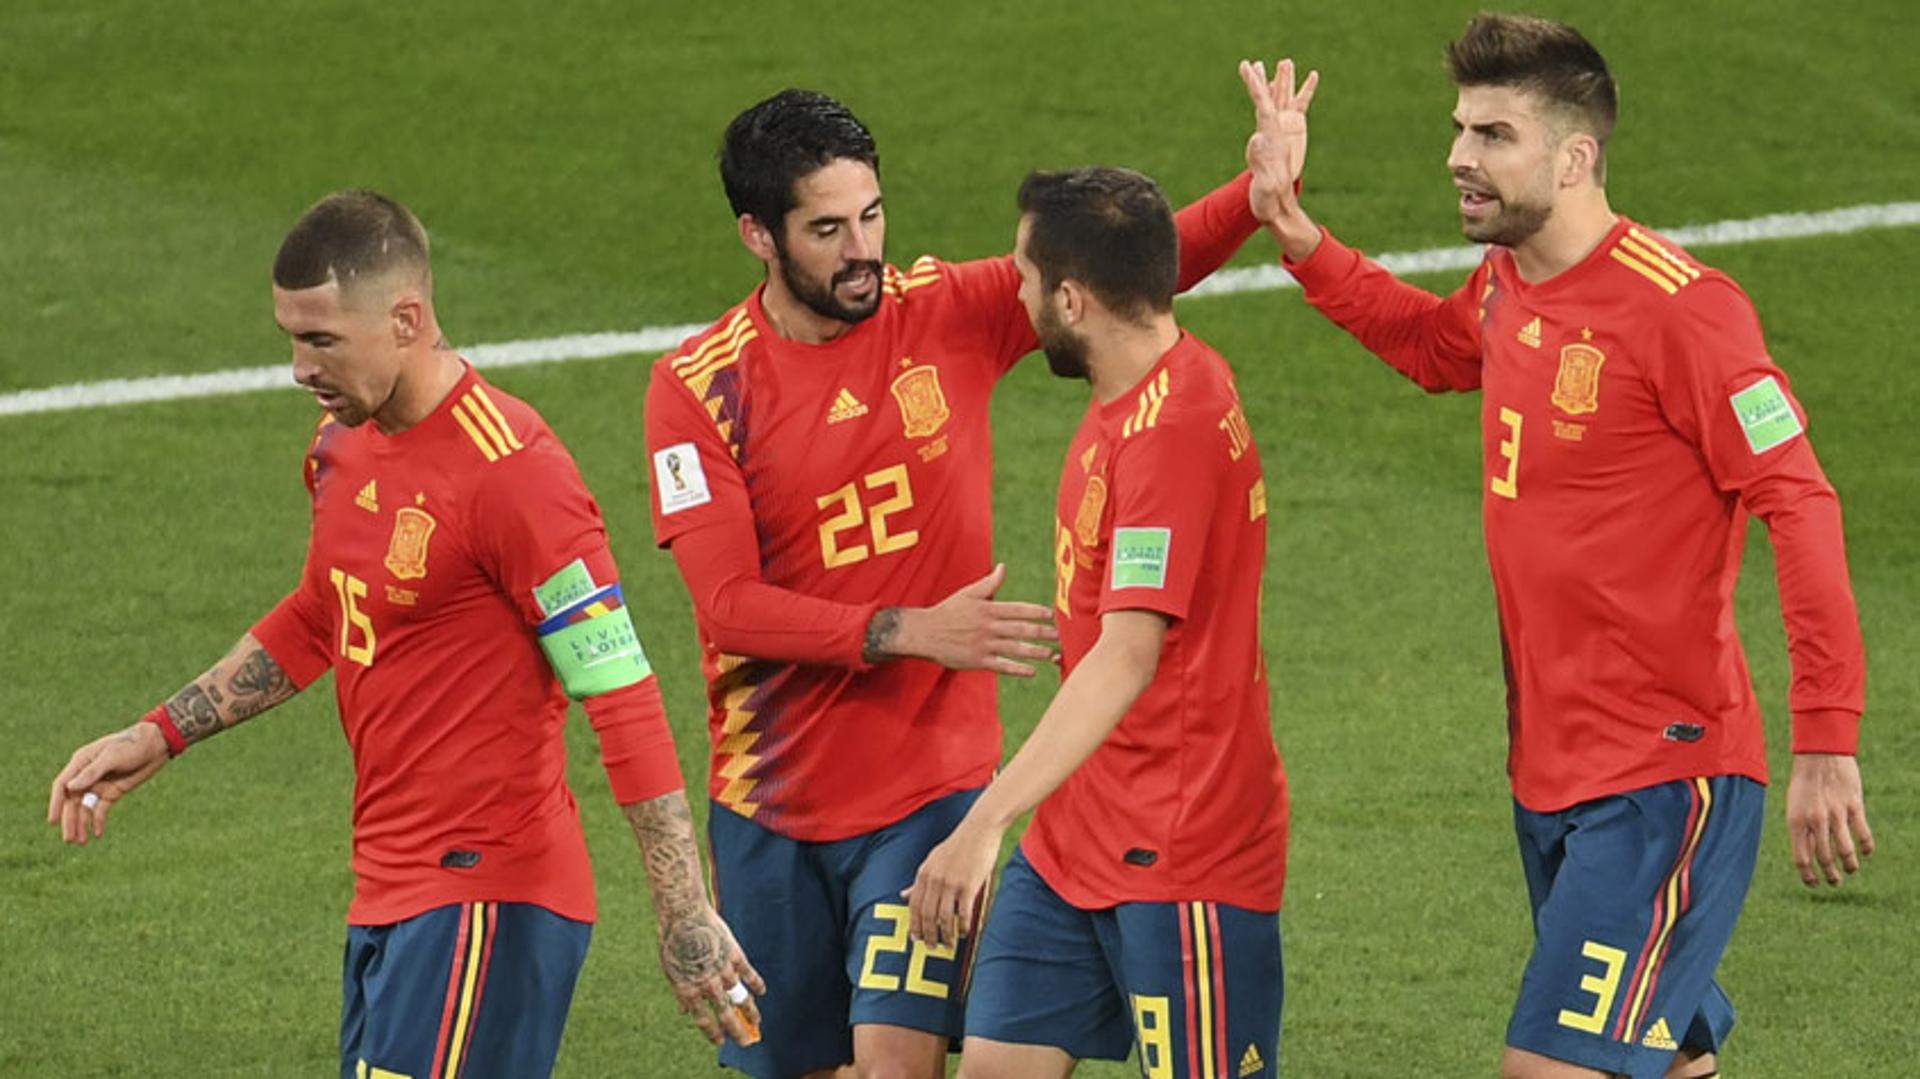 Espanha empatou com Marrocos com gol confirmado pelo VAR nos acréscimos. Ficou na ponta de grupos e irá encarar a Rússia&nbsp;